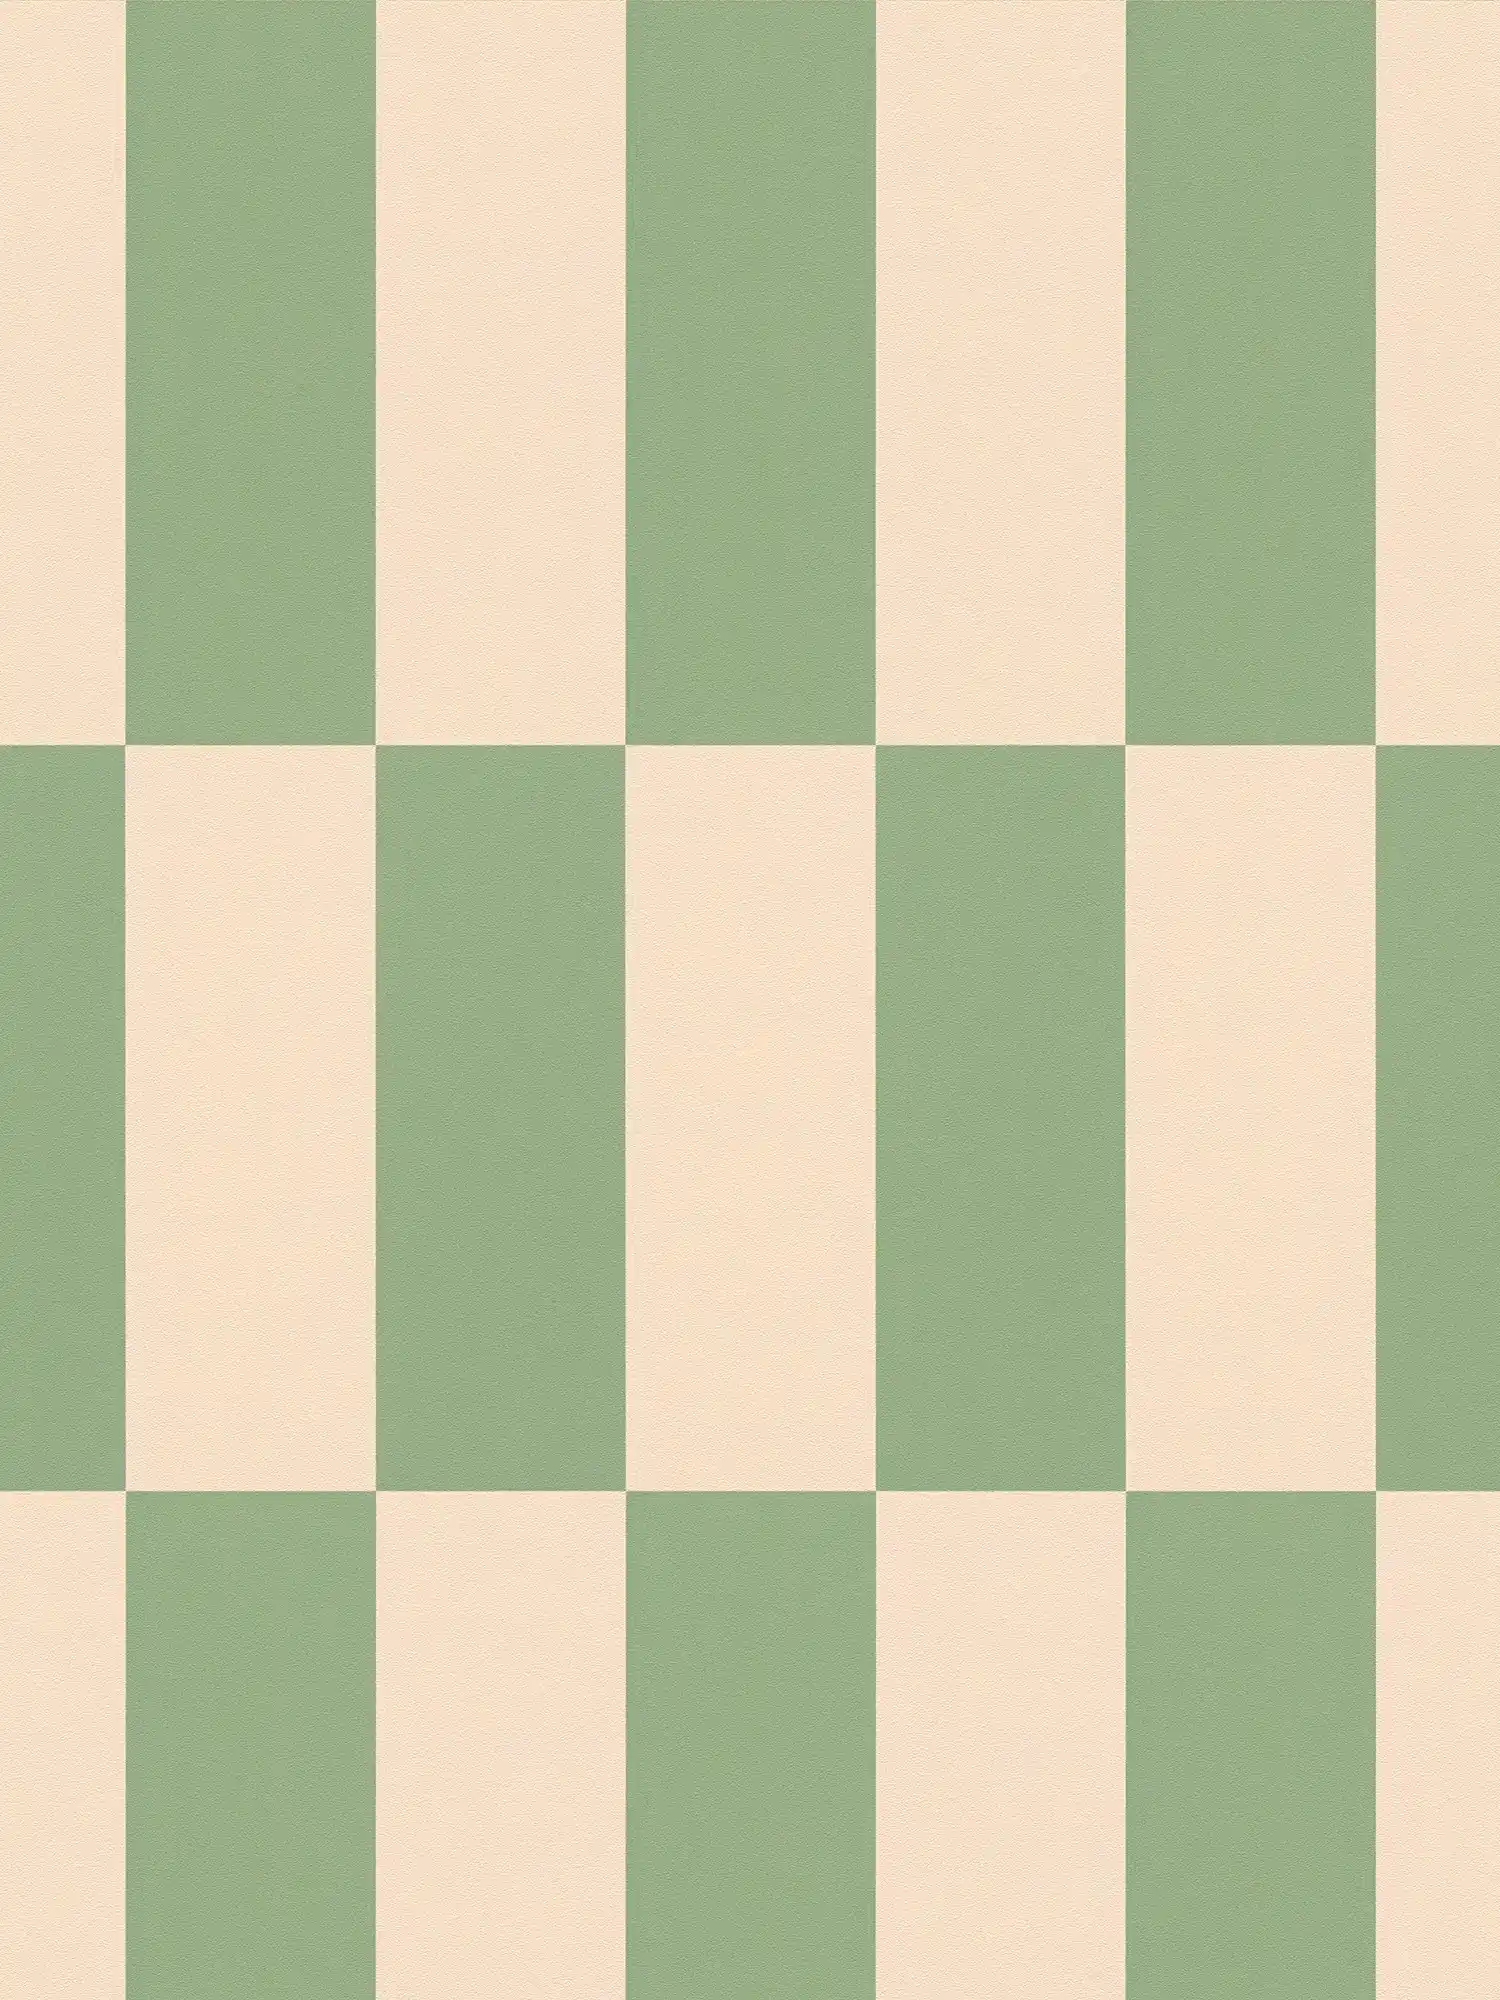         Vliesbehang grafische vierkanten tweekleurig - beige, groen
    